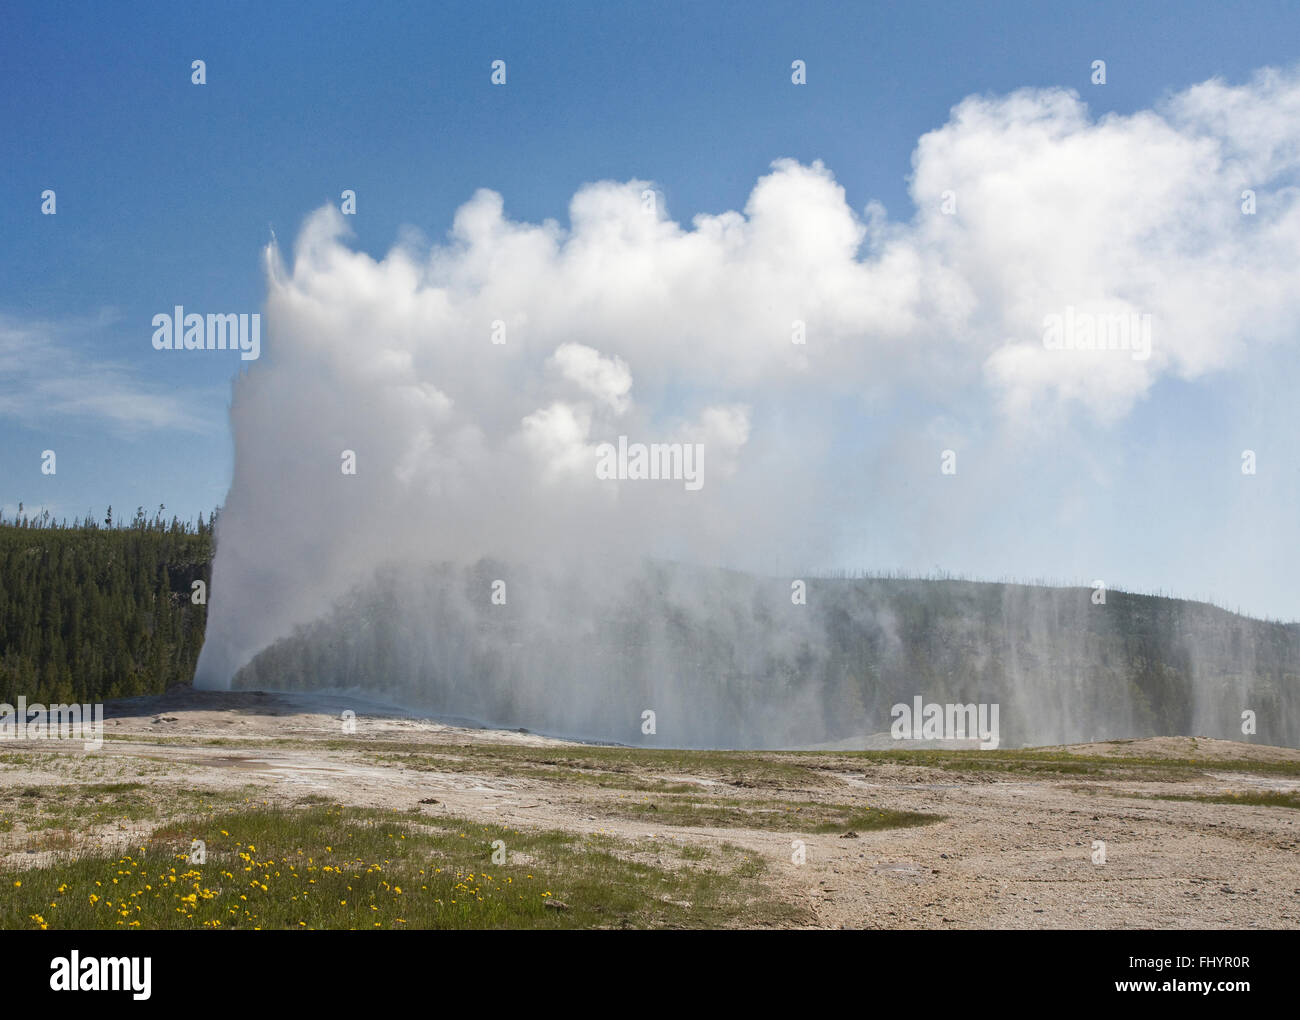 OLD Faithful Geyser en éruption toutes les heures de l'envoi jusqu'à 8 400 gallons d'eau bouillante 184 pieds en l'air - Parc national de Yellowstone Banque D'Images